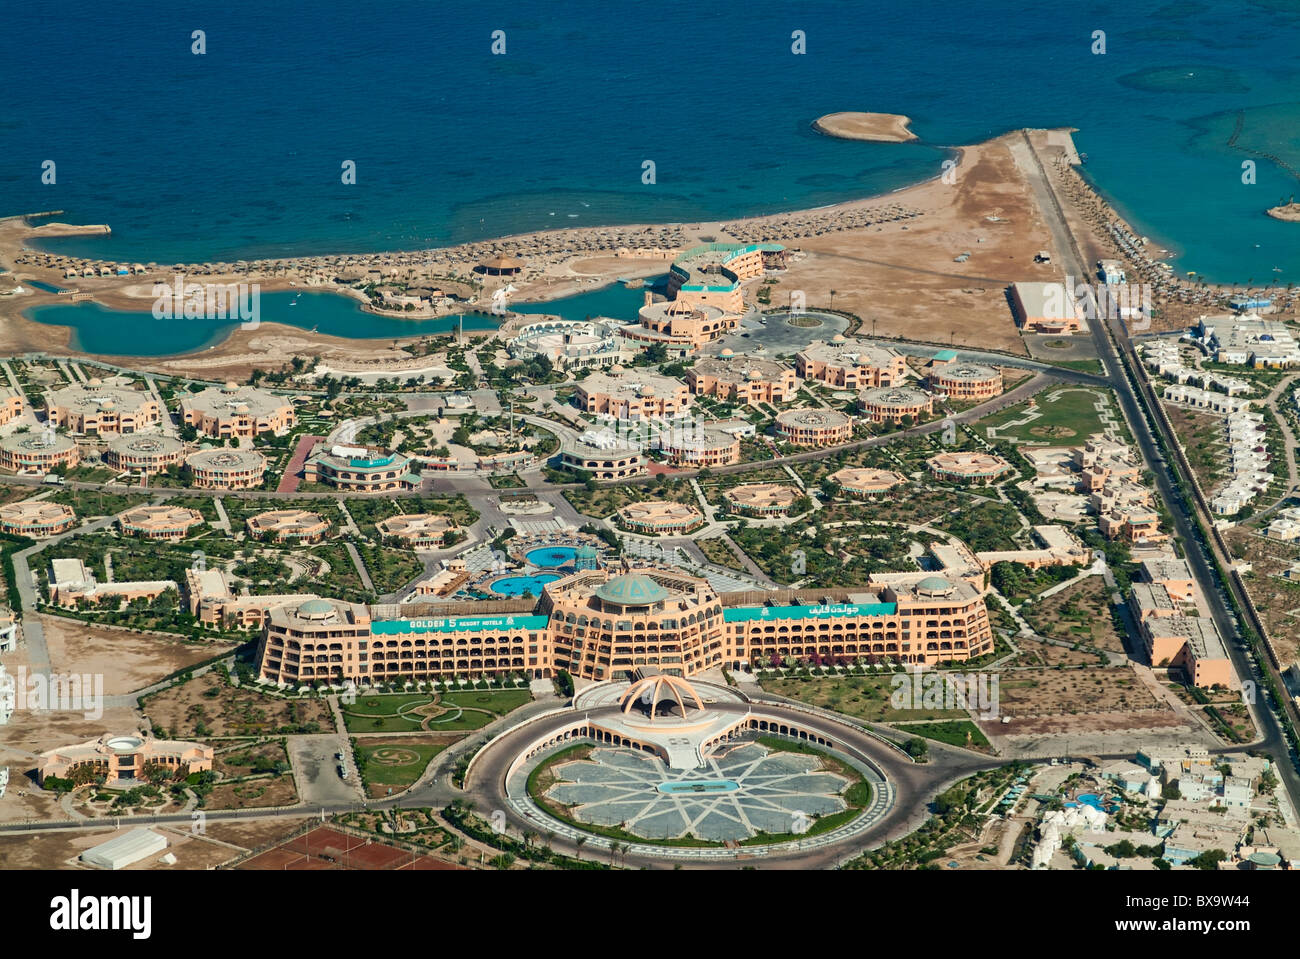 Vista della costiera alberghi di lusso resort di Hurghada, Mar Rosso, Egitto - vista aerea del club Golden 5 star hotel e resort Foto Stock